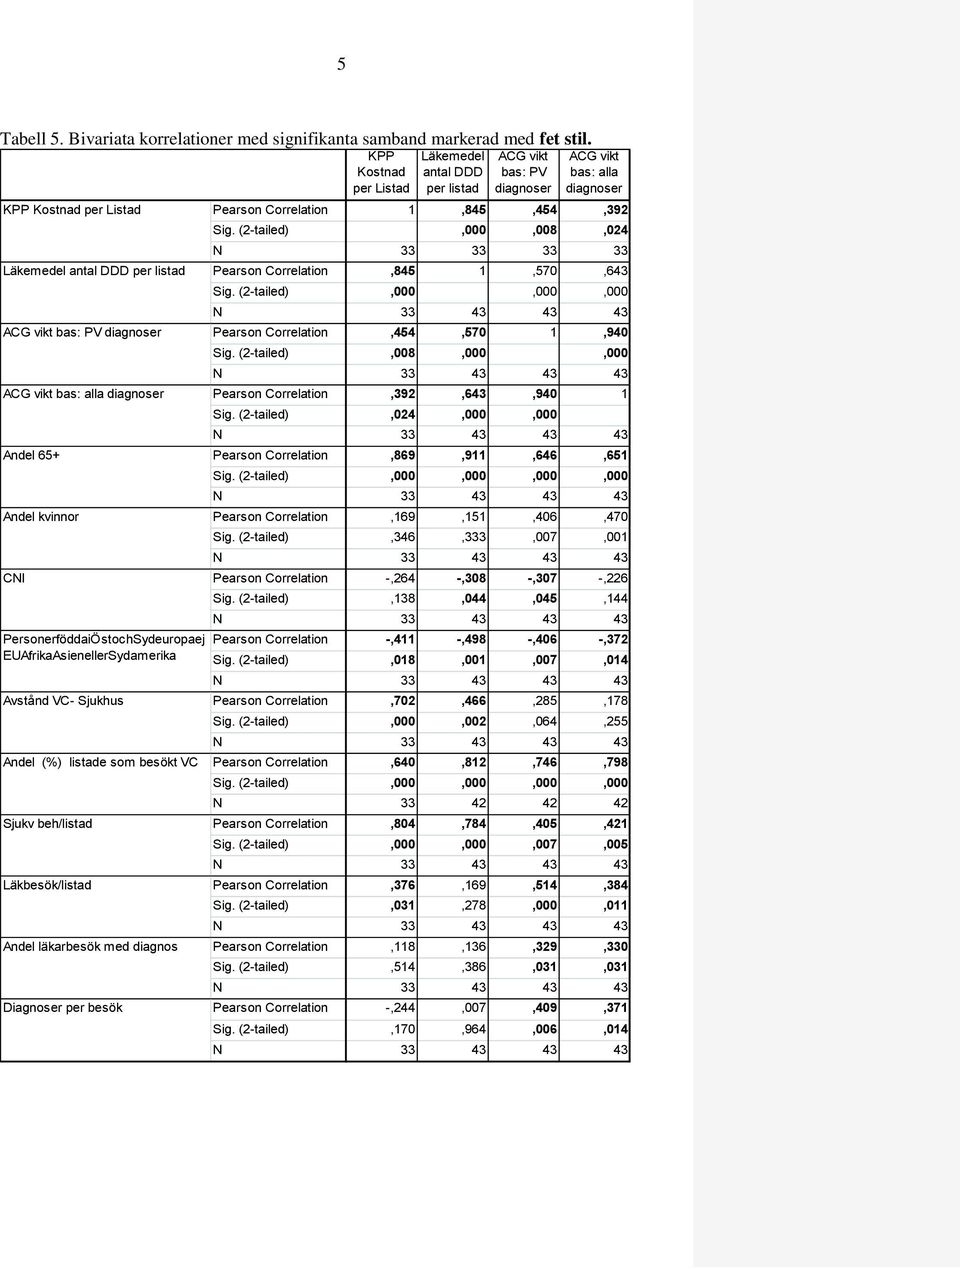 Avstånd VC- Sjukhus Andel (%) listade som besökt VC Sjukv beh/listad Läkbesök/listad Andel läkarbesök med diagnos Diagnoser per besök KPP Kostnad per Listad Läkemedel antal DDD per listad ACG vikt